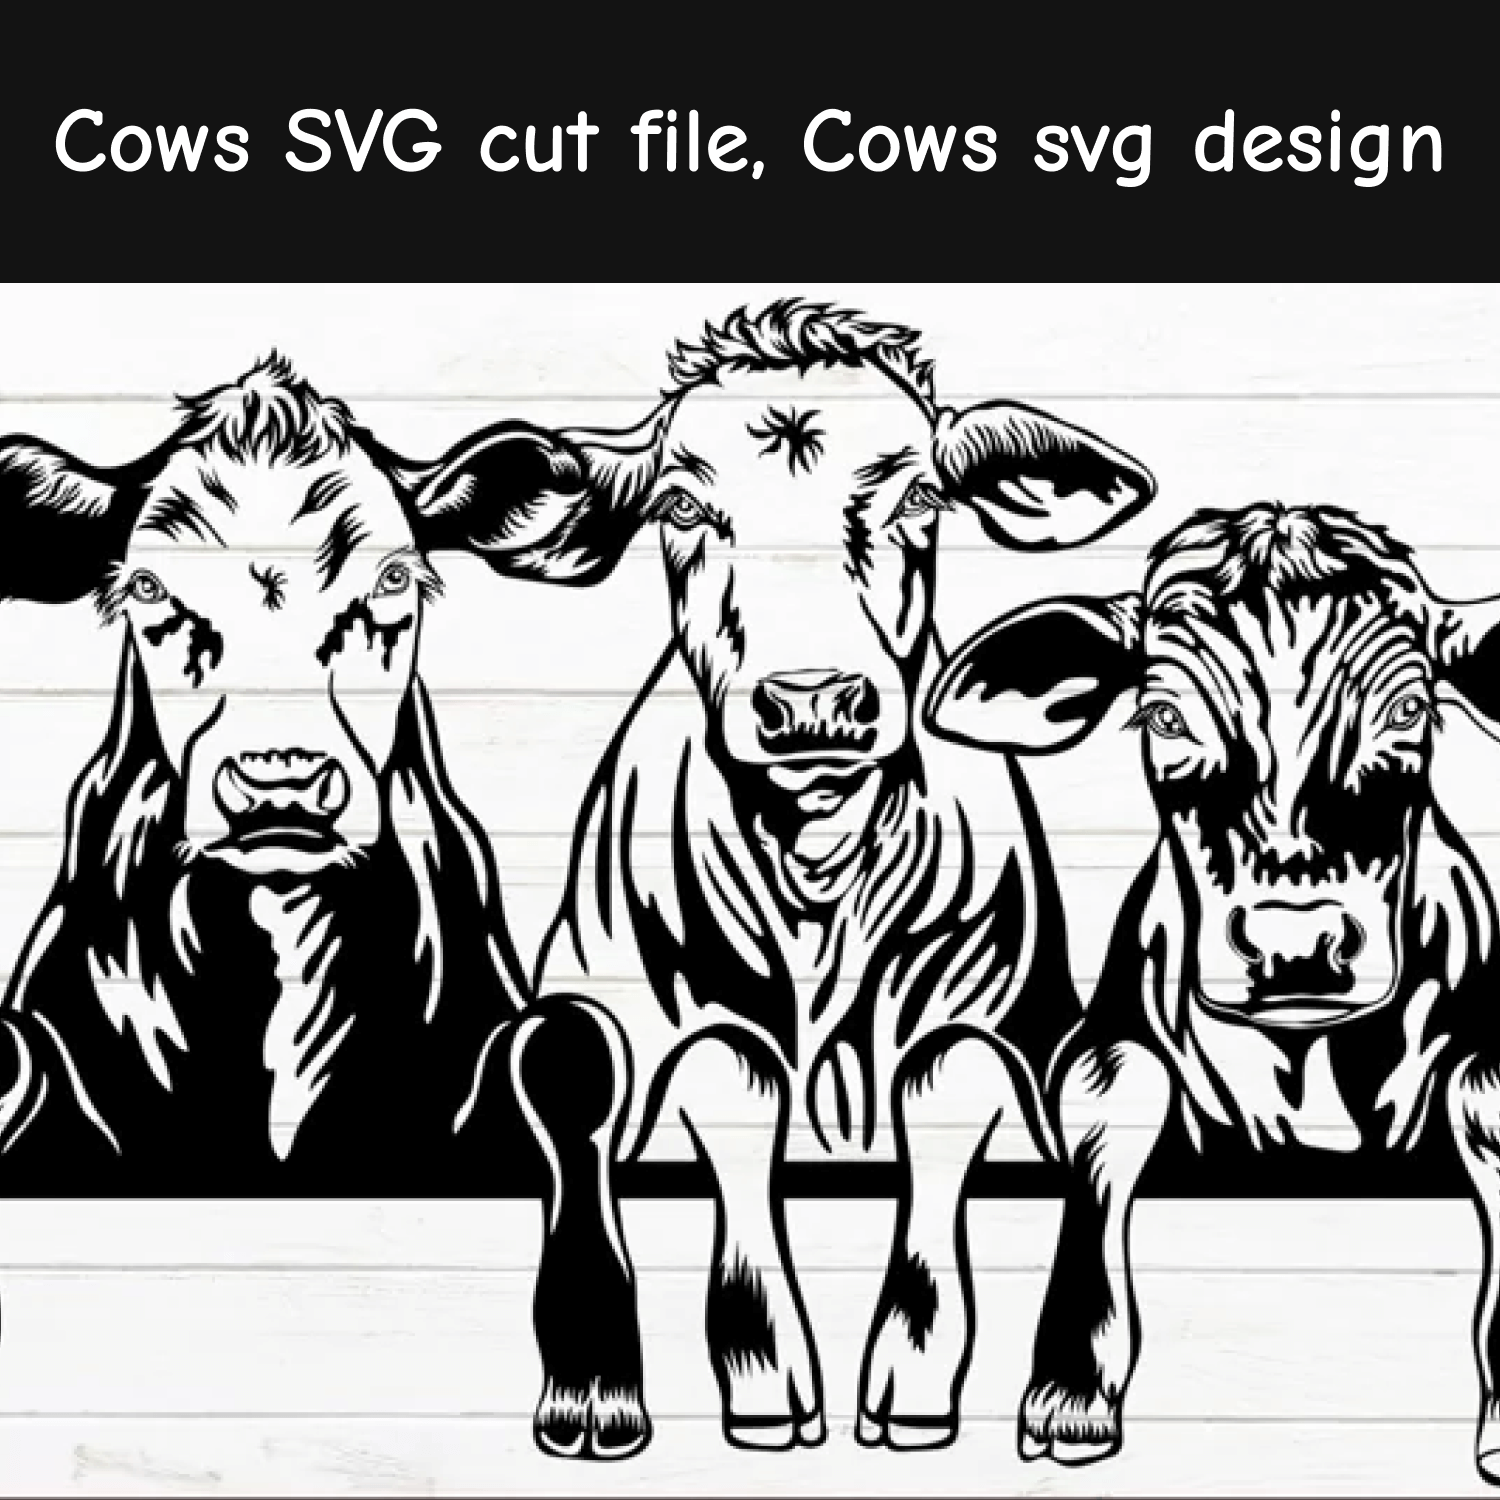 Сows svg cut file cows svg design.